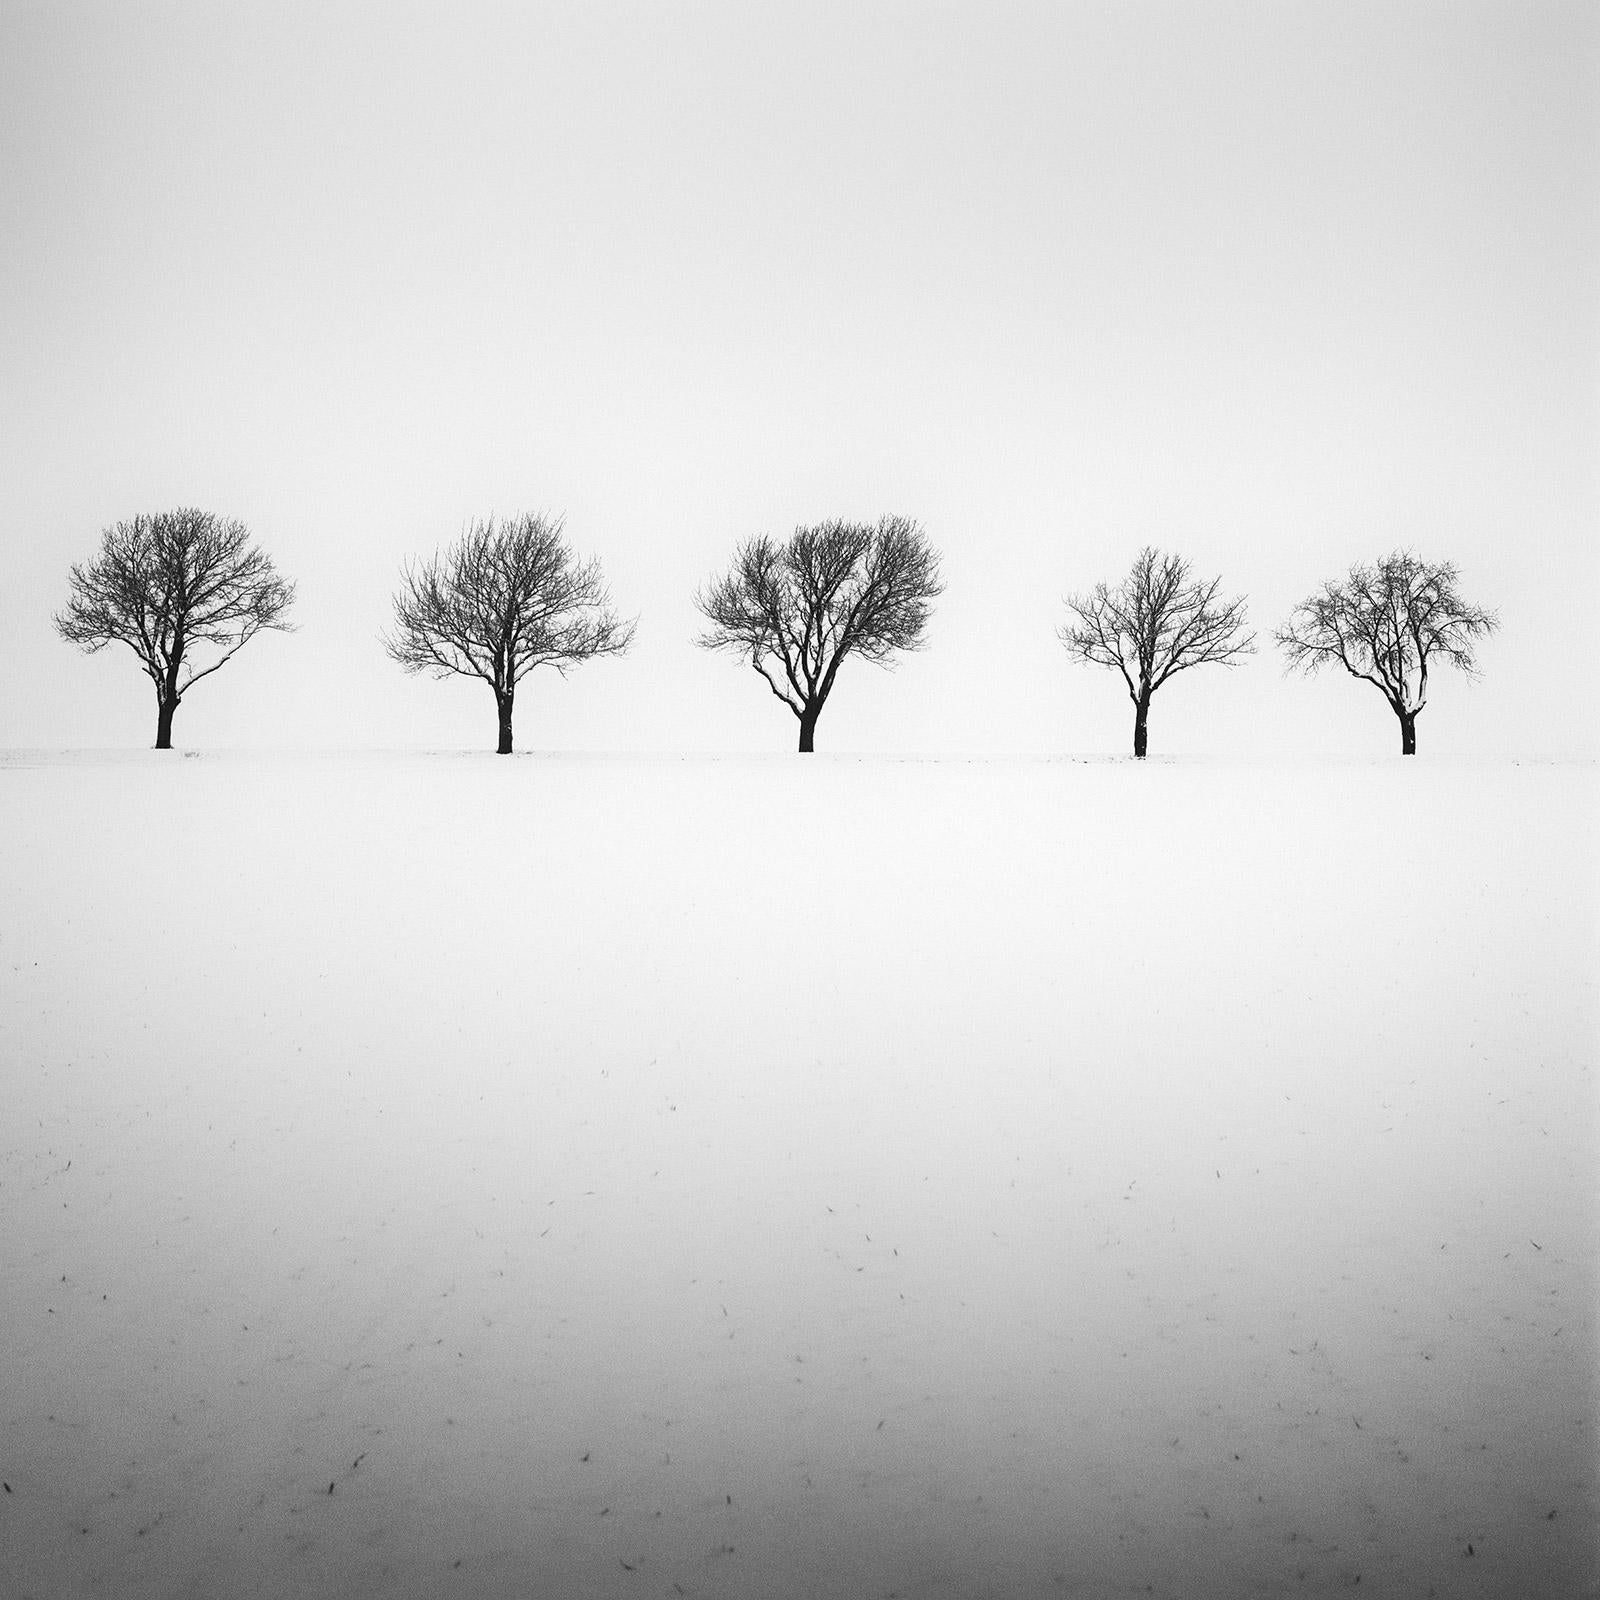 Cinq arbres dans un champ enneigé, Autriche, photographie fine noir et blanc, paysage